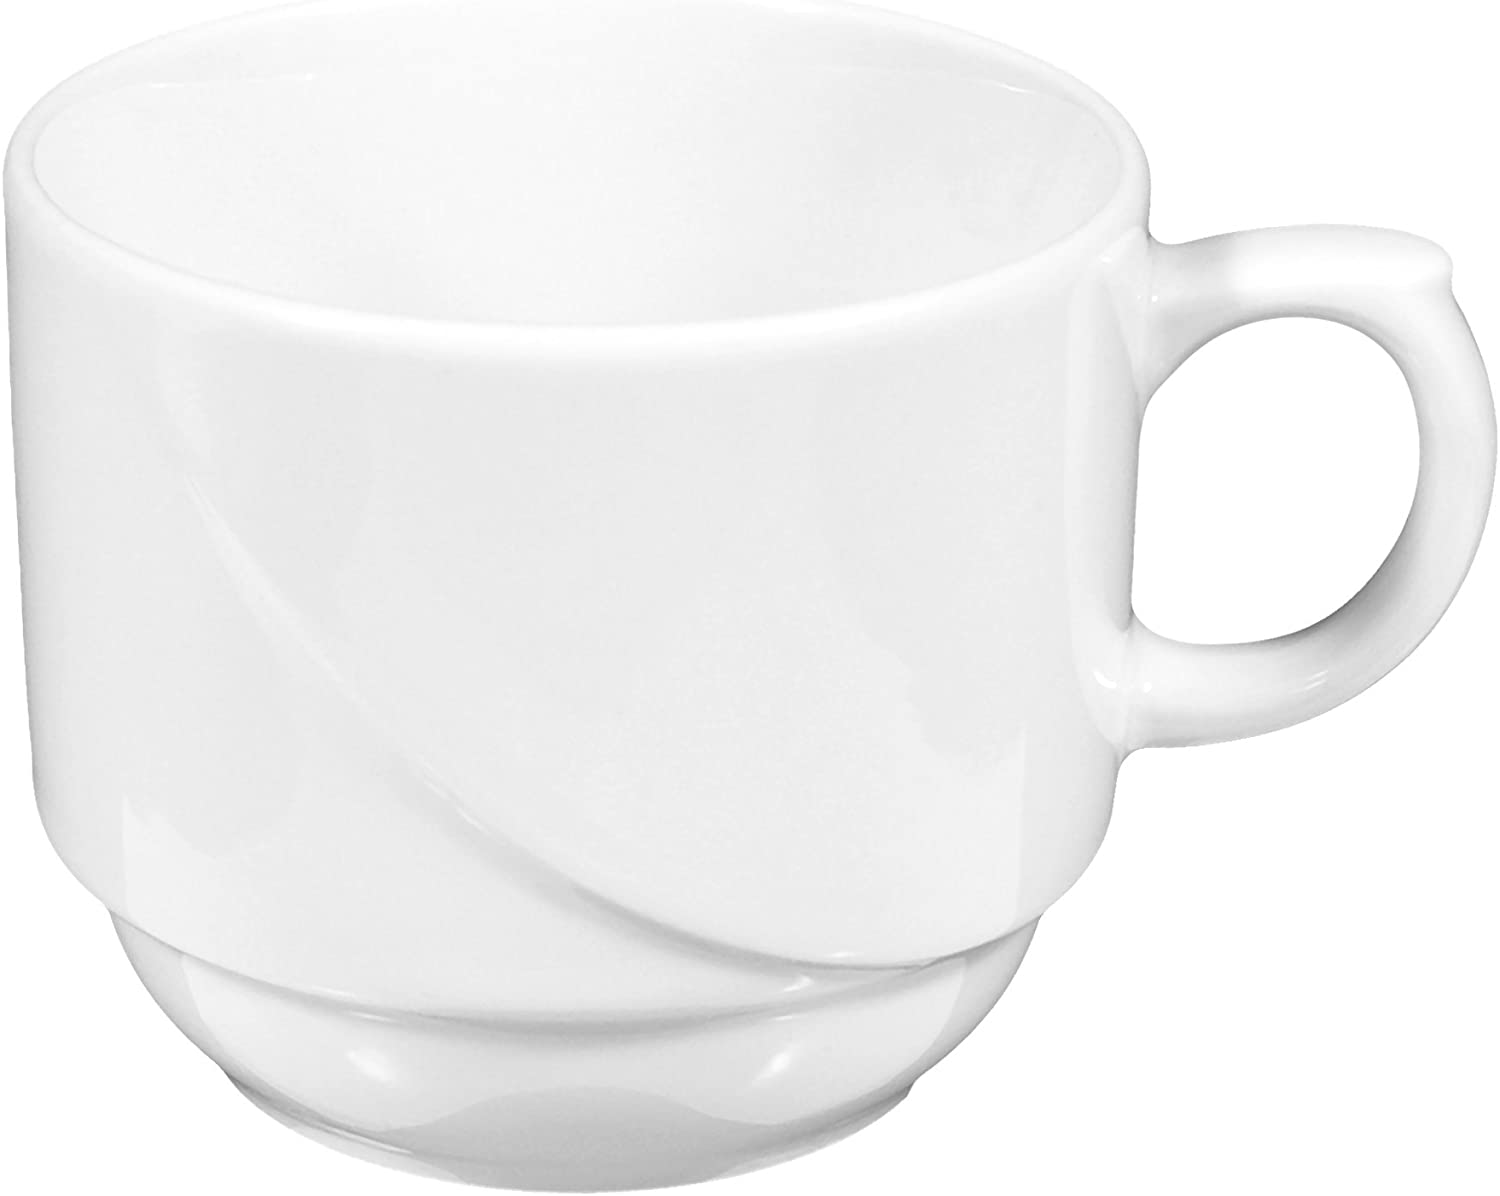 Milk Coffee Cup 8,1 cm Laguna White Universal 00006 by Seltmann Weiden